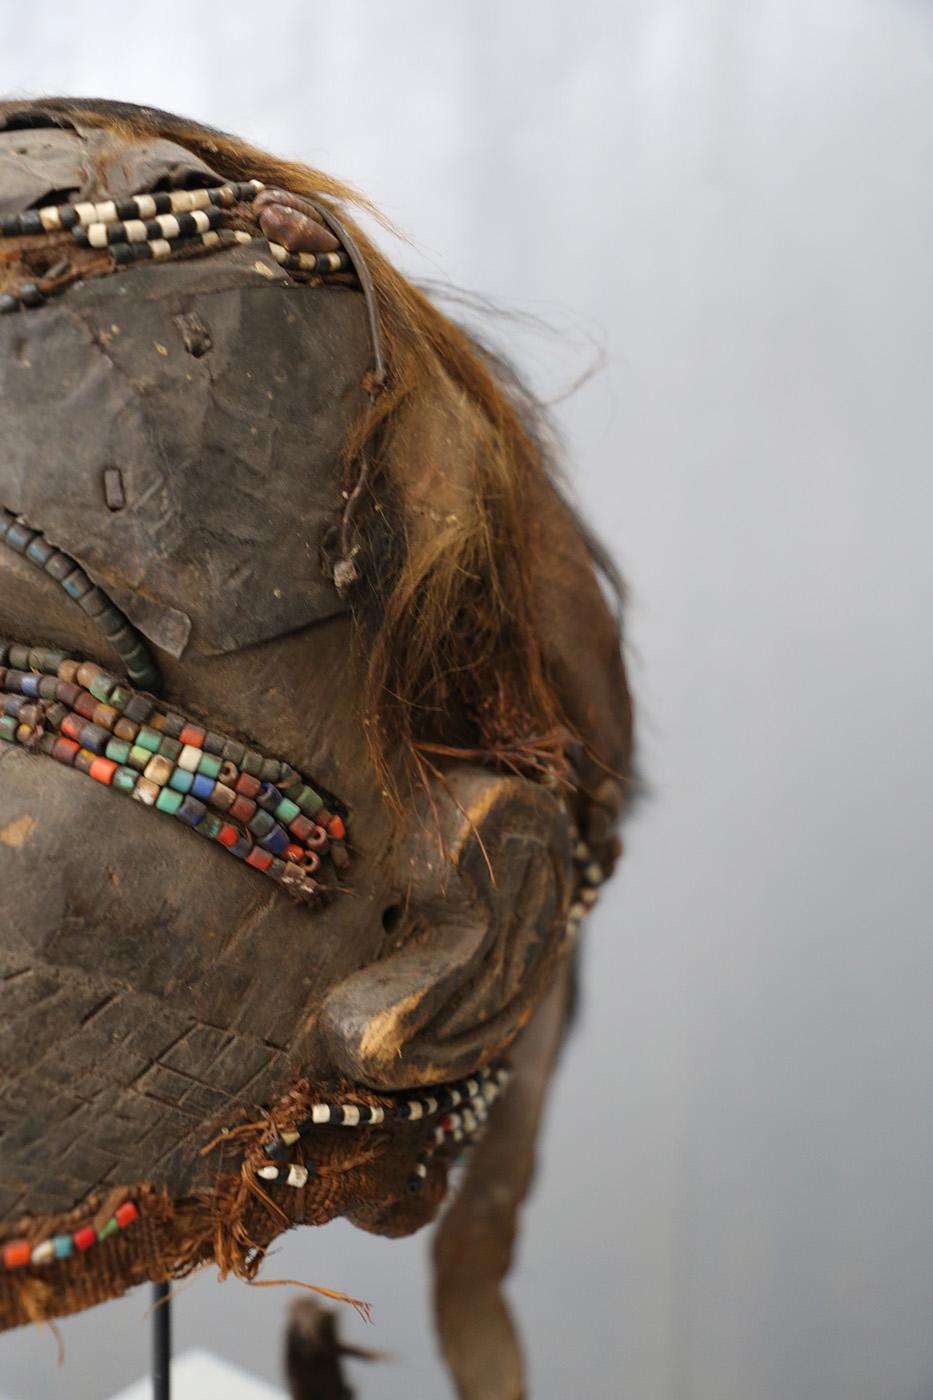 Die afrikanische Kuba-Bwoom-Stammesmaske ist die älteste bekannte Maske, die Kuba-Bwoom-Maske. Die Materialien, die für die Realisierung der Maske verwendet werden, sind: Holz, Farben und schwingt Pflanzen, Kuren, Perlen, Tierhaare. Im Tanz drückt